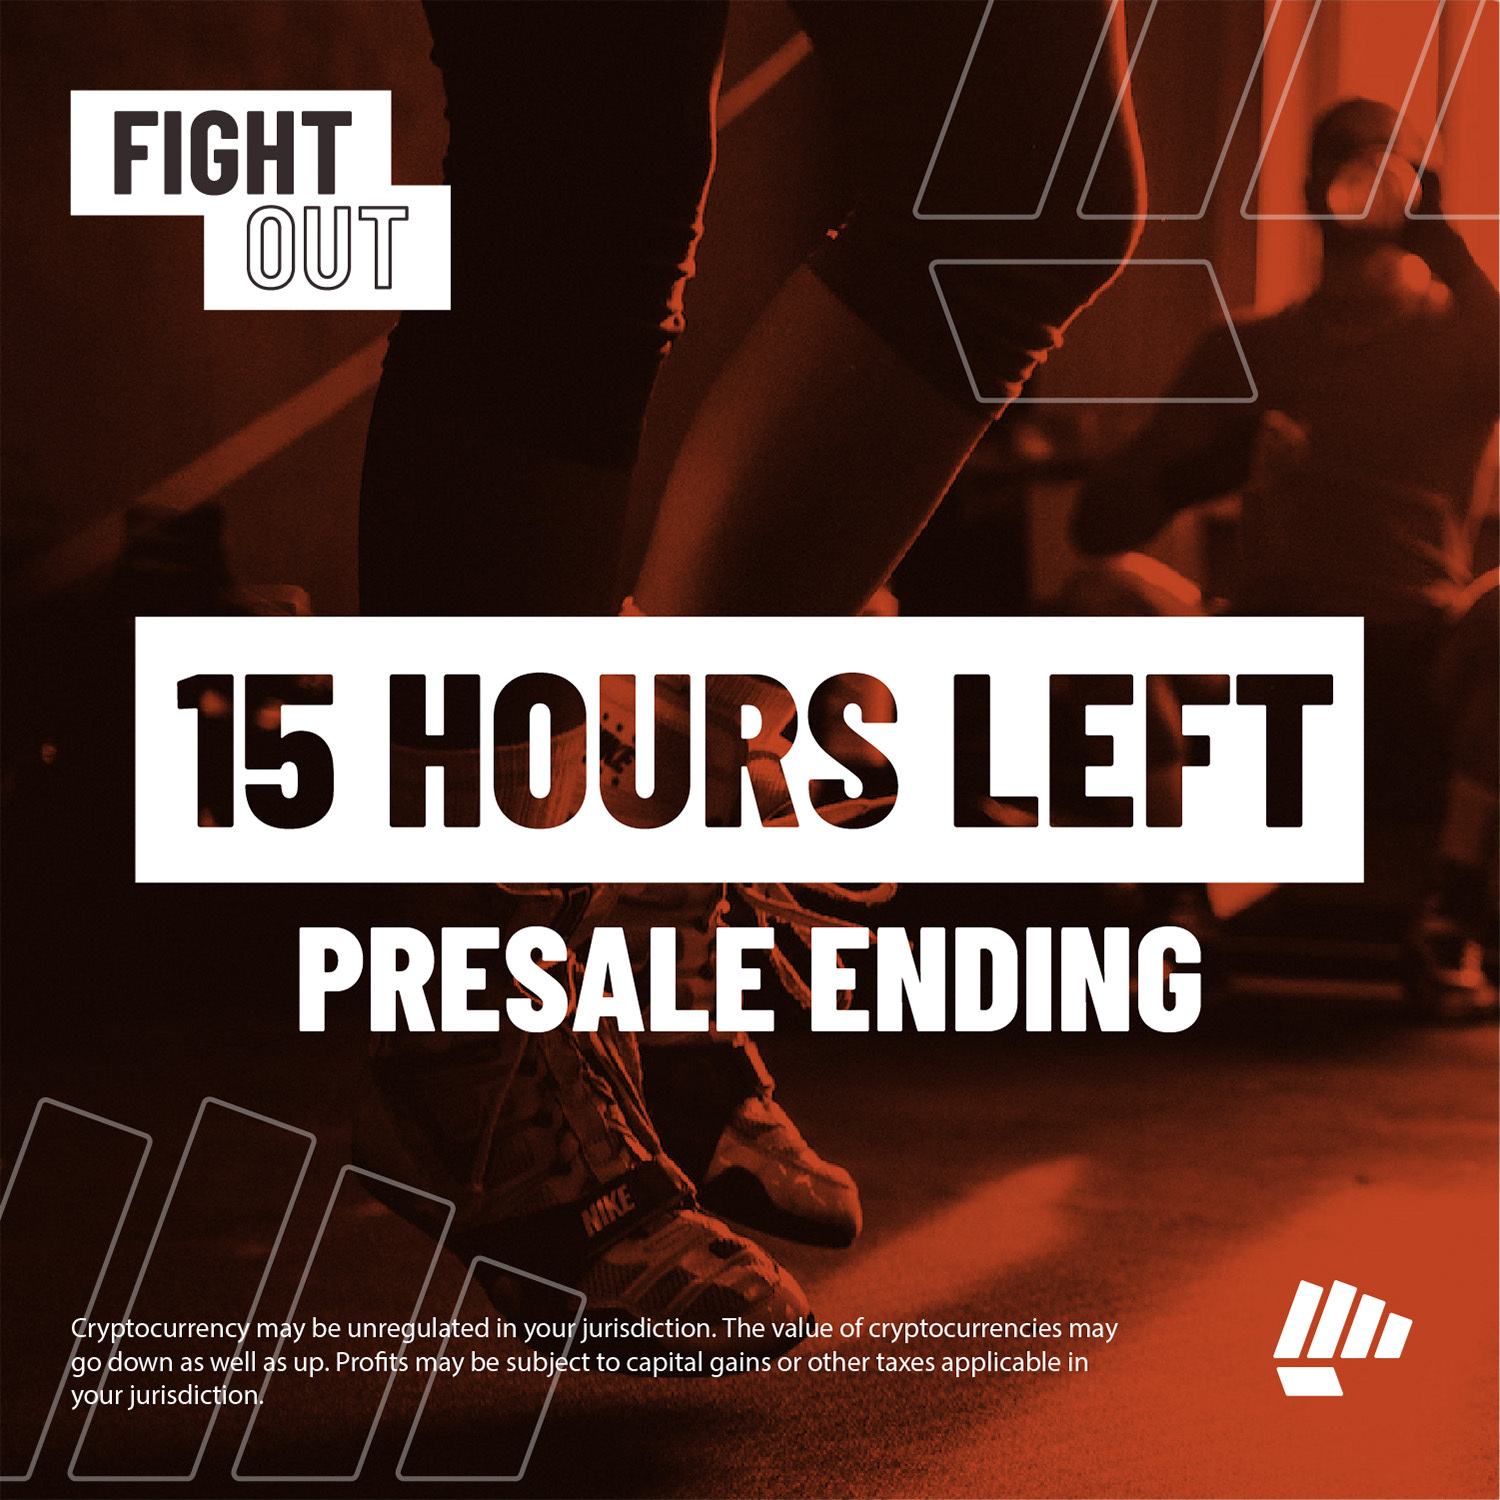 Fight Out Presale eindigt vandaag na ophalen $6m met Exchange Listing over 5 dagen - laatste kans om te kopen met 67% Bonus